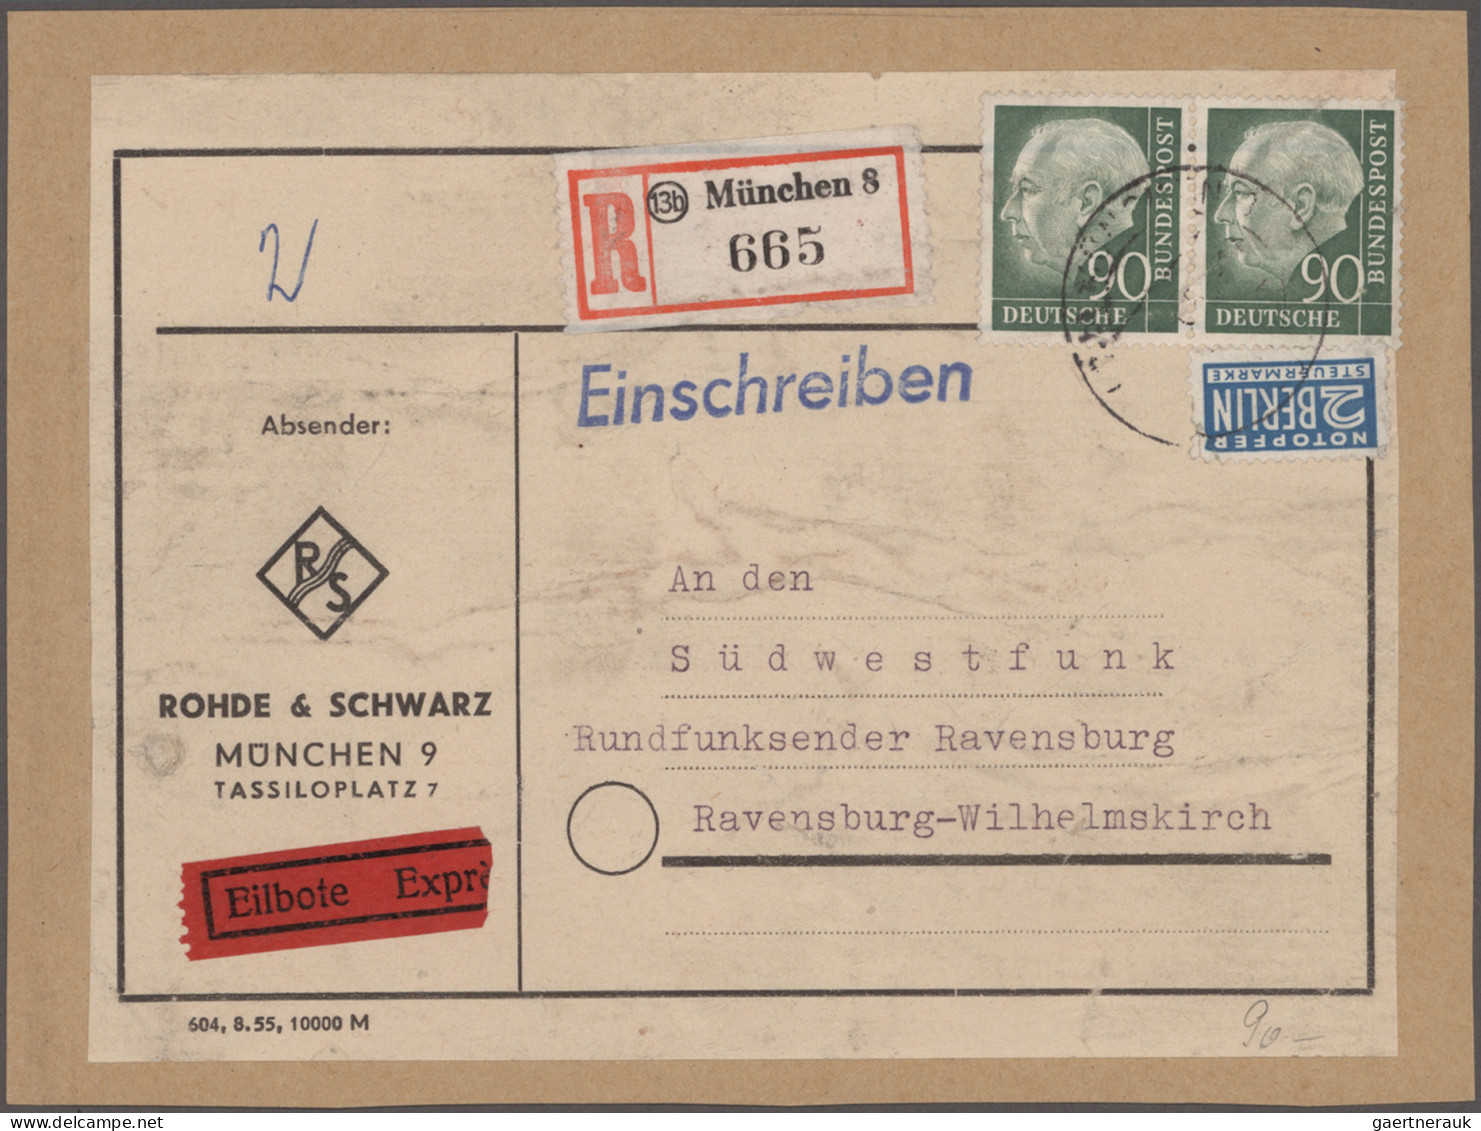 Bizone - Zwangszuschlagsmarken: 1948/1946, umfangreiche Sammlung mit vielen inte